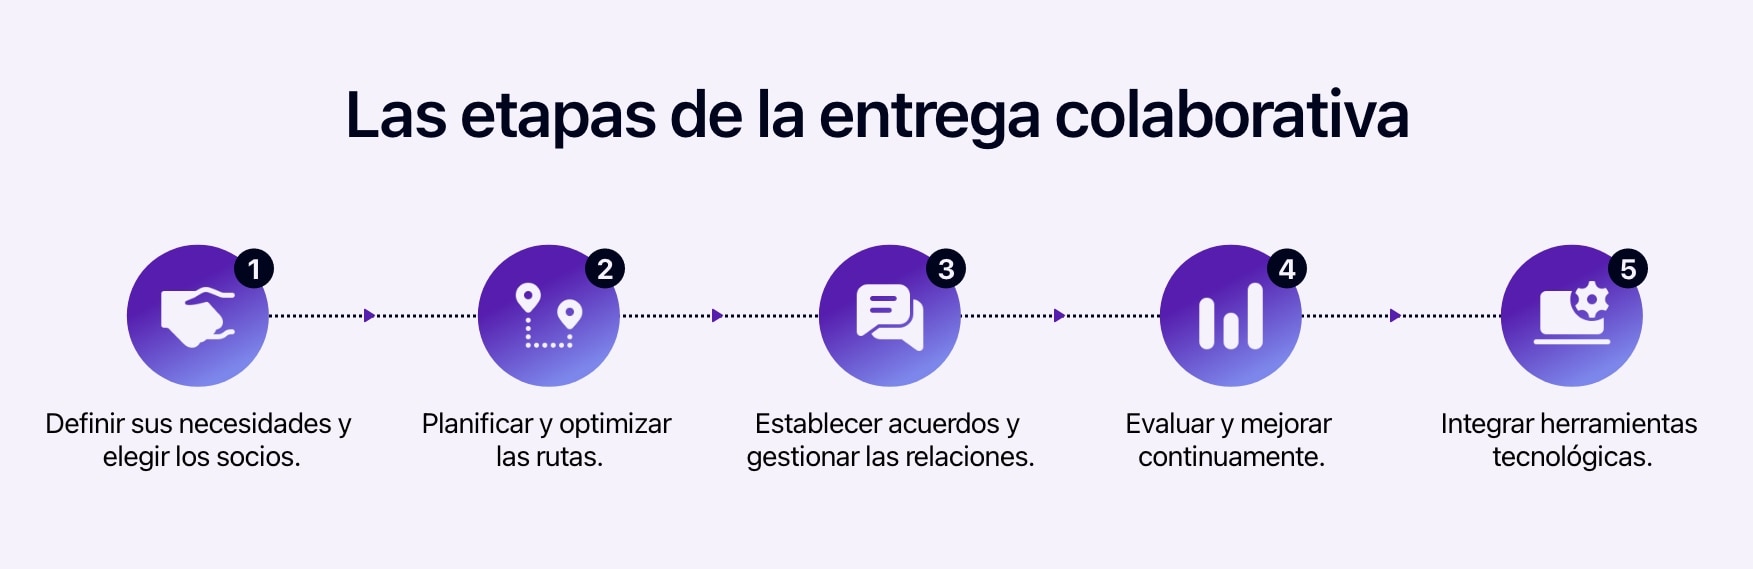 Diagrama que muestra los 5 etapas para organizar entregas colaborativas.